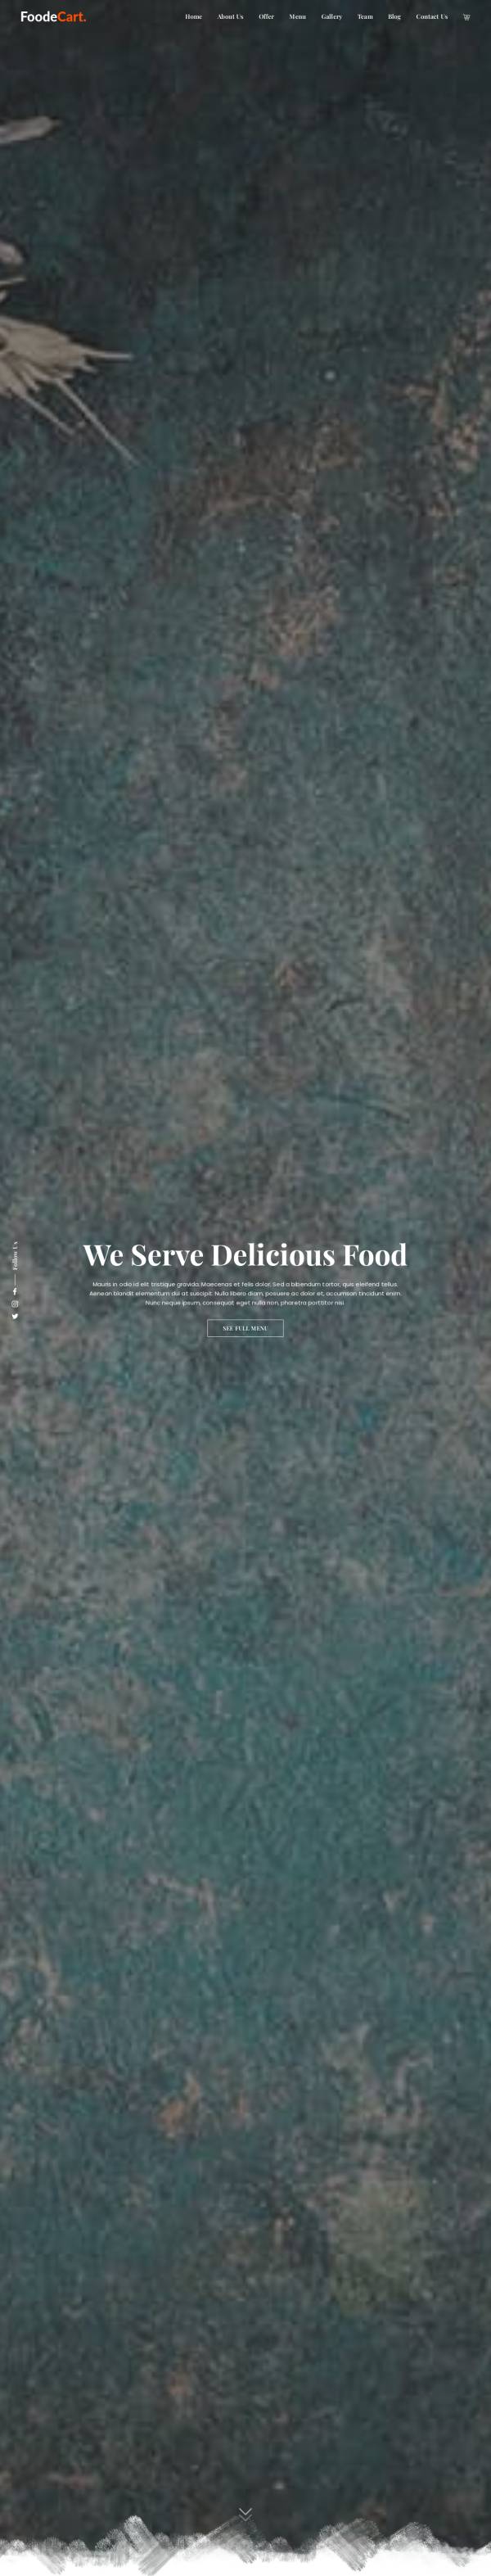 响应式餐厅美食主页HTML模板